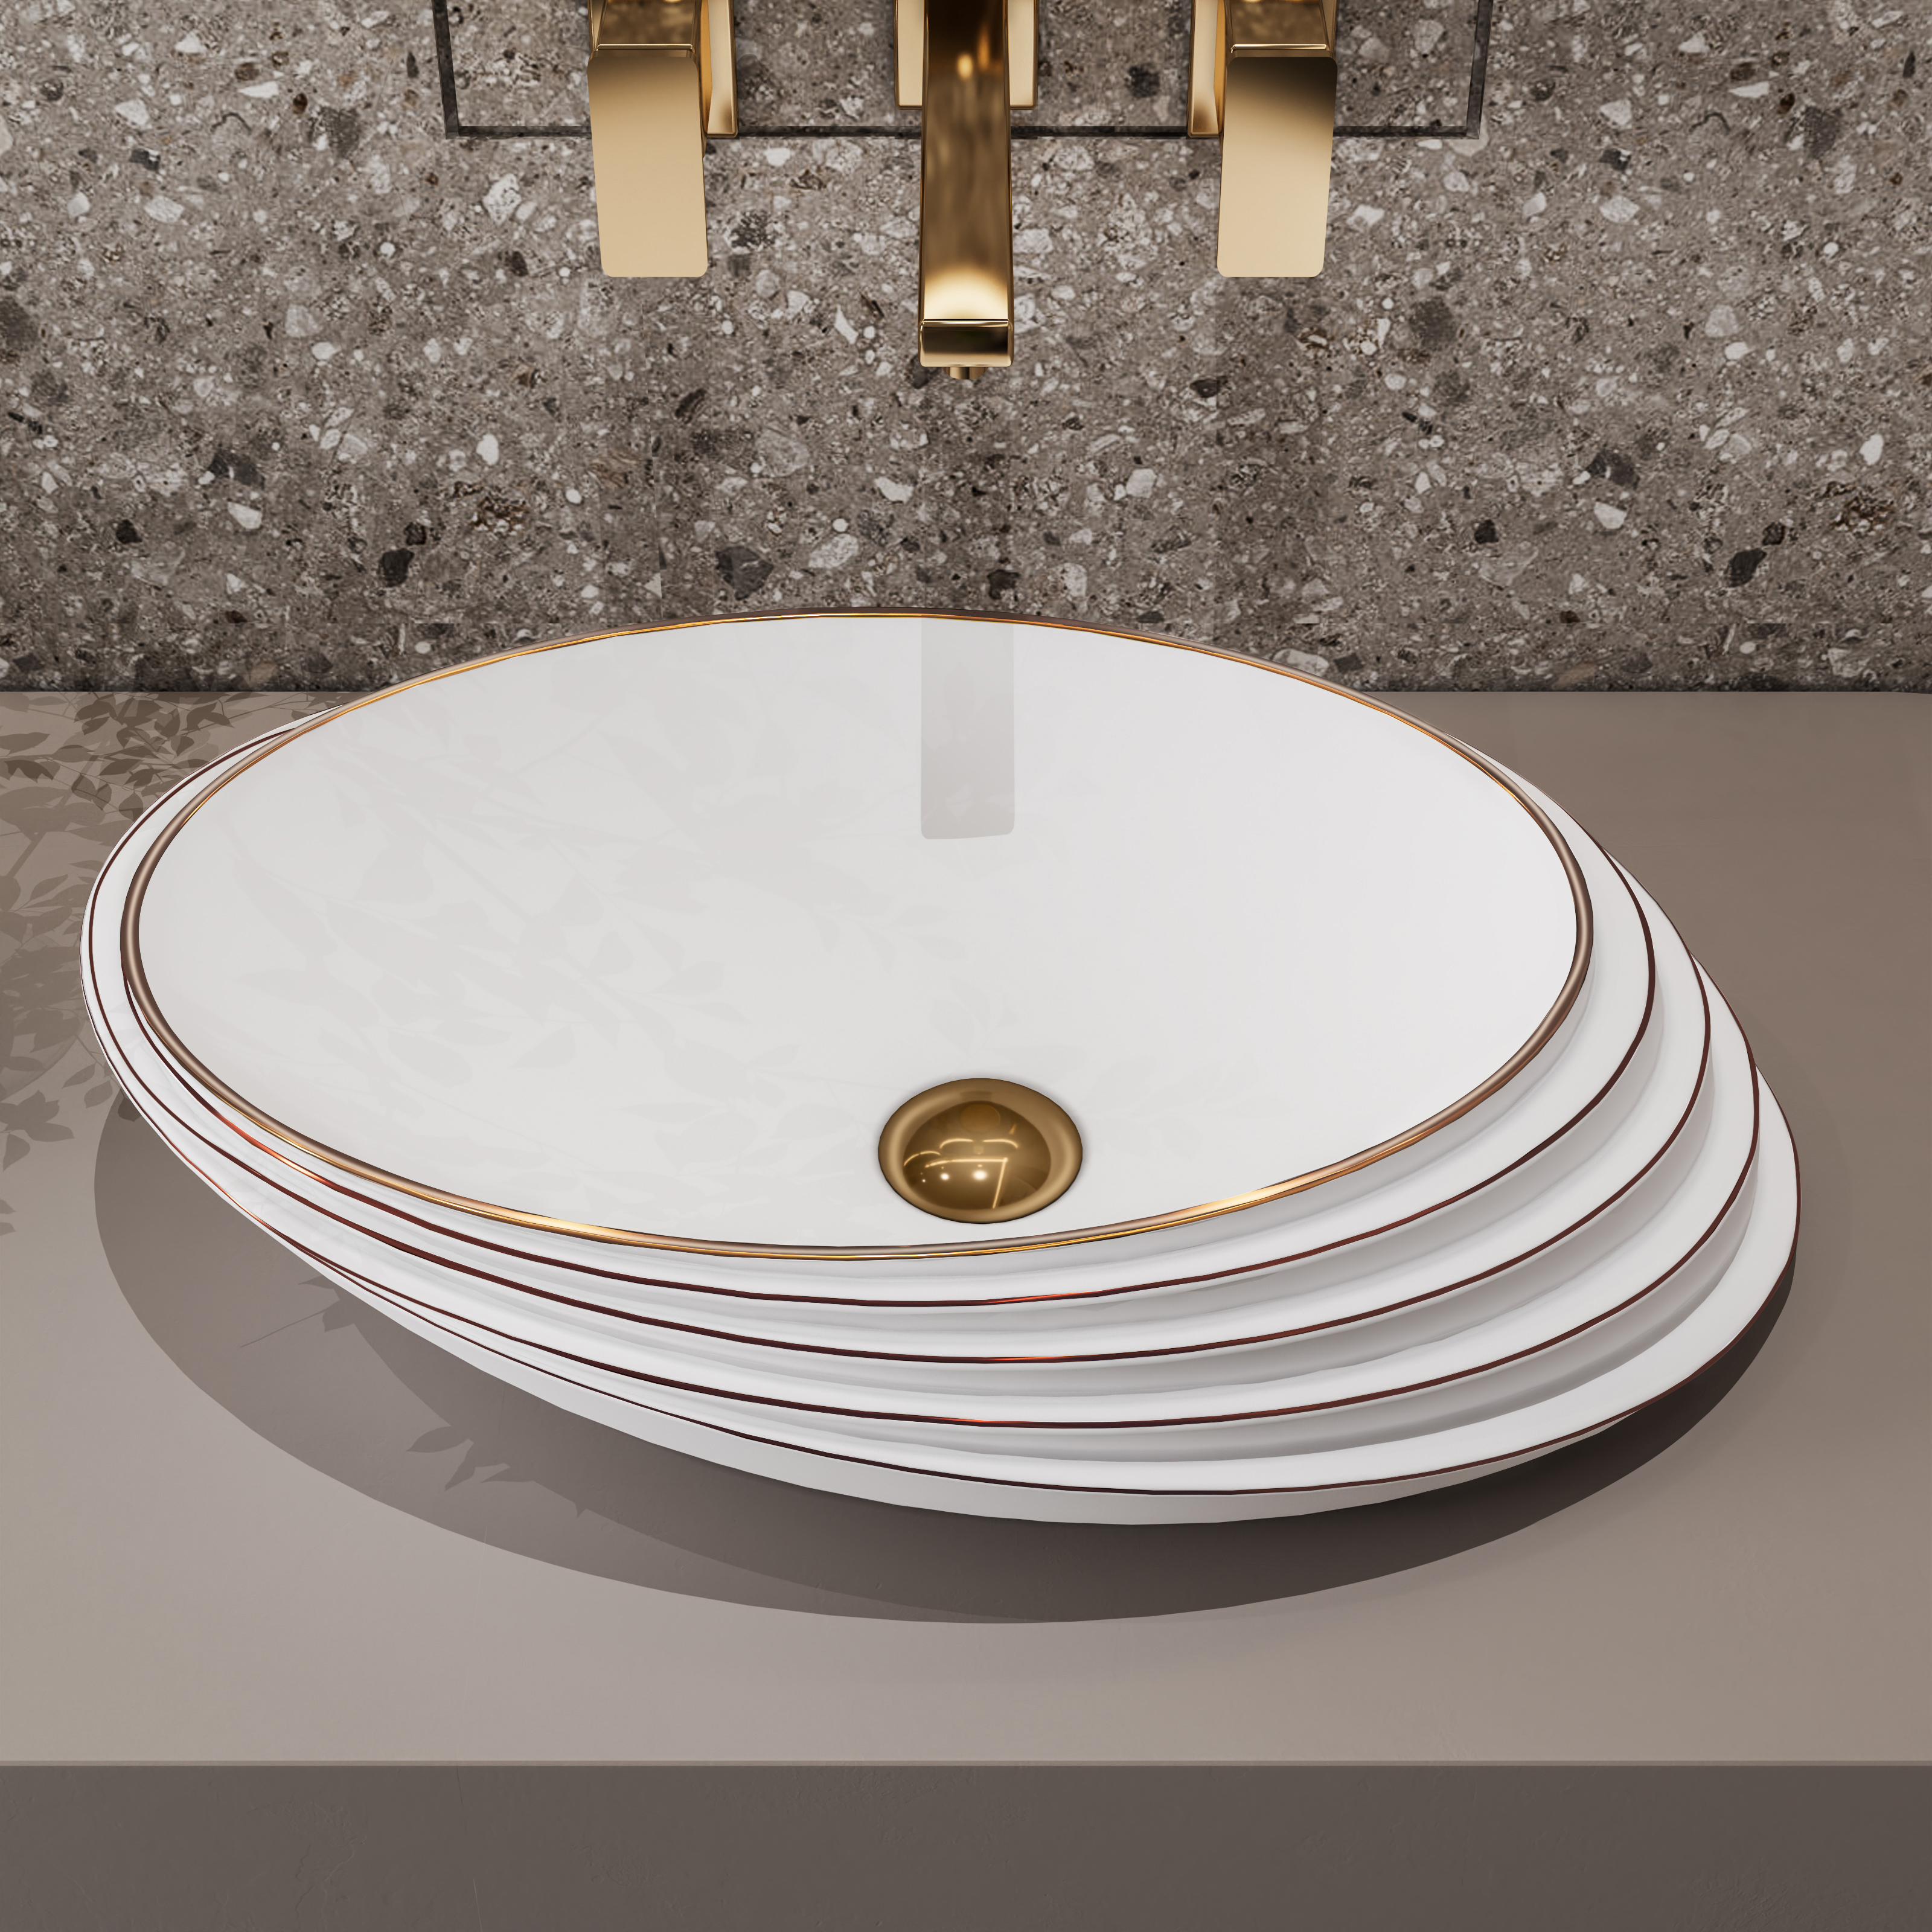 MEJE 21 Inch Slant Oval Shape Art Basin, Embossed Pattern,Rose Gold Trim Design, Above Counter Bathroom Sink, Porcelain Ceramic Countertop Vessel Sink (Include pop up drain)